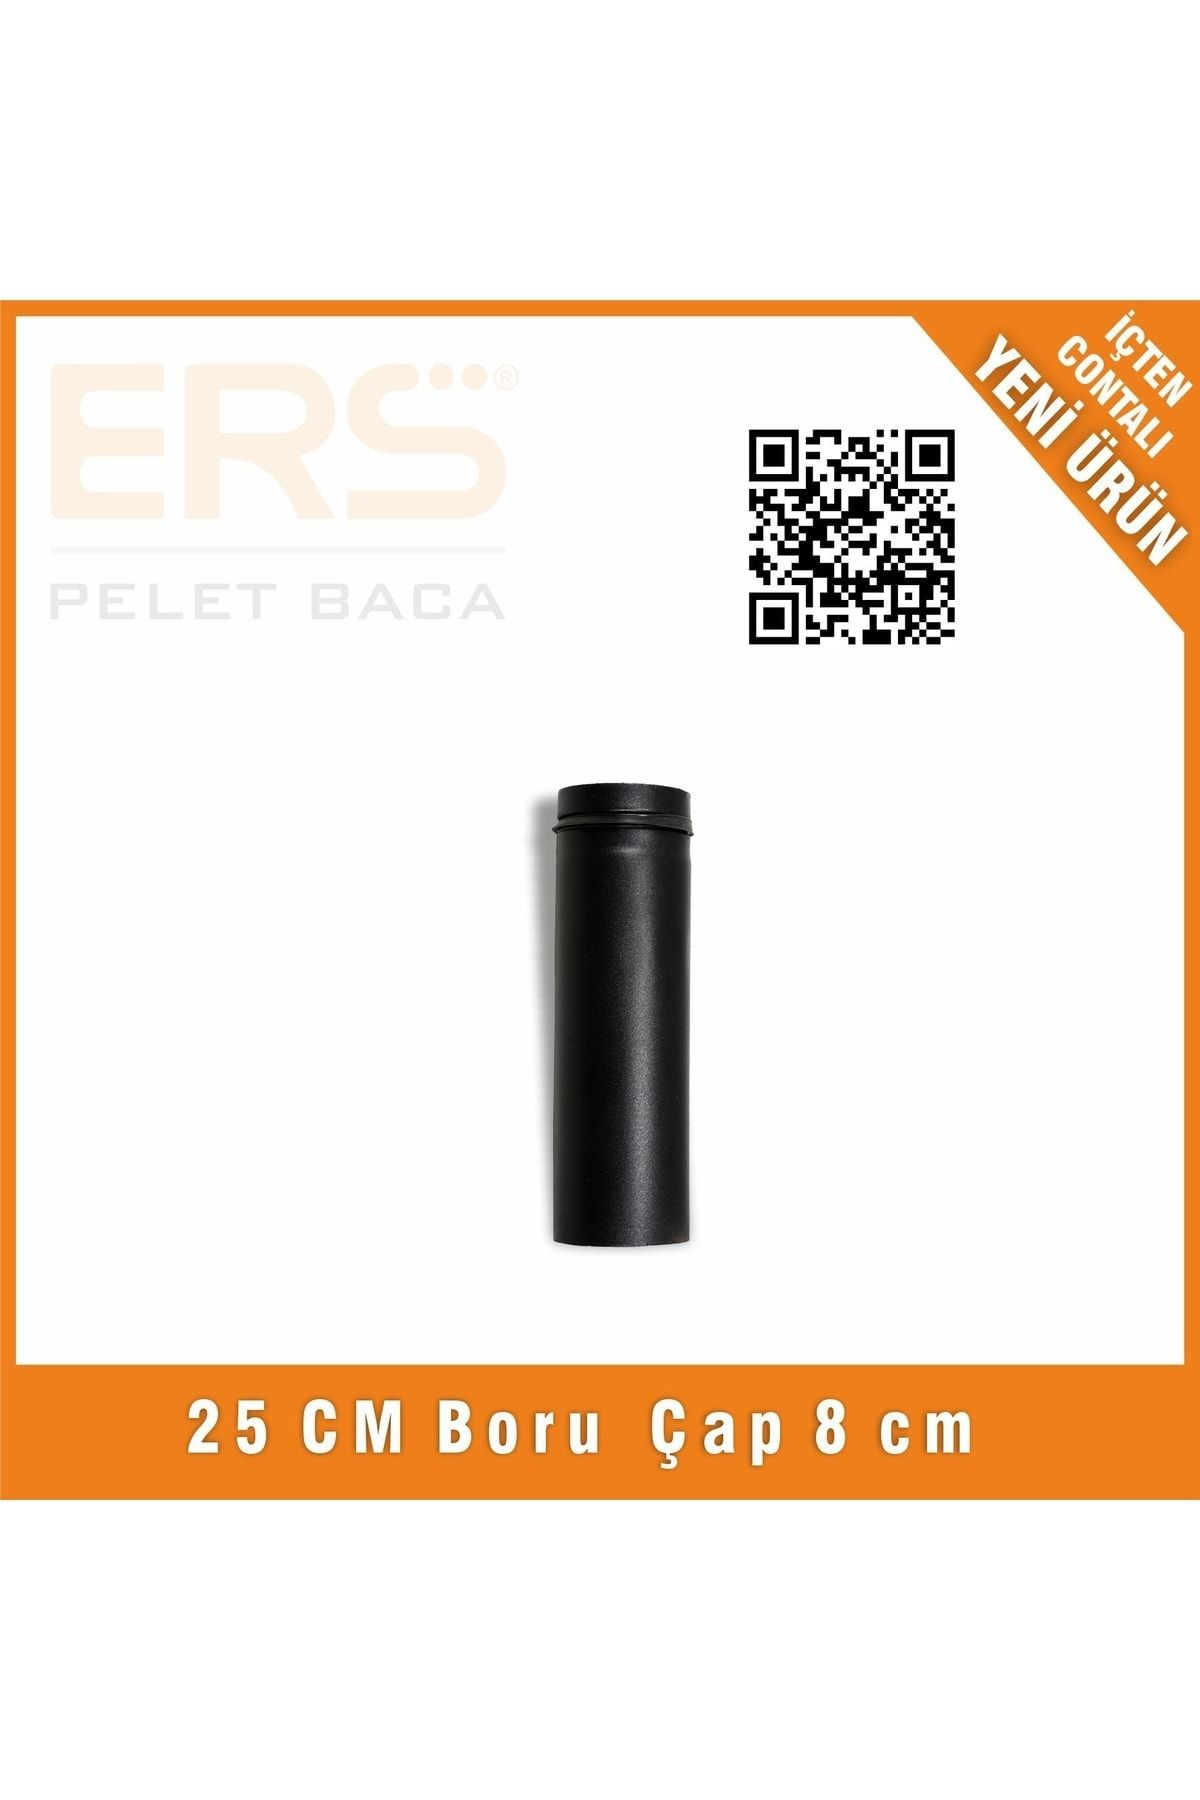 ERS BACA 25 cm Boru - Pelet Baca 8 Cm (ø 80 mm)